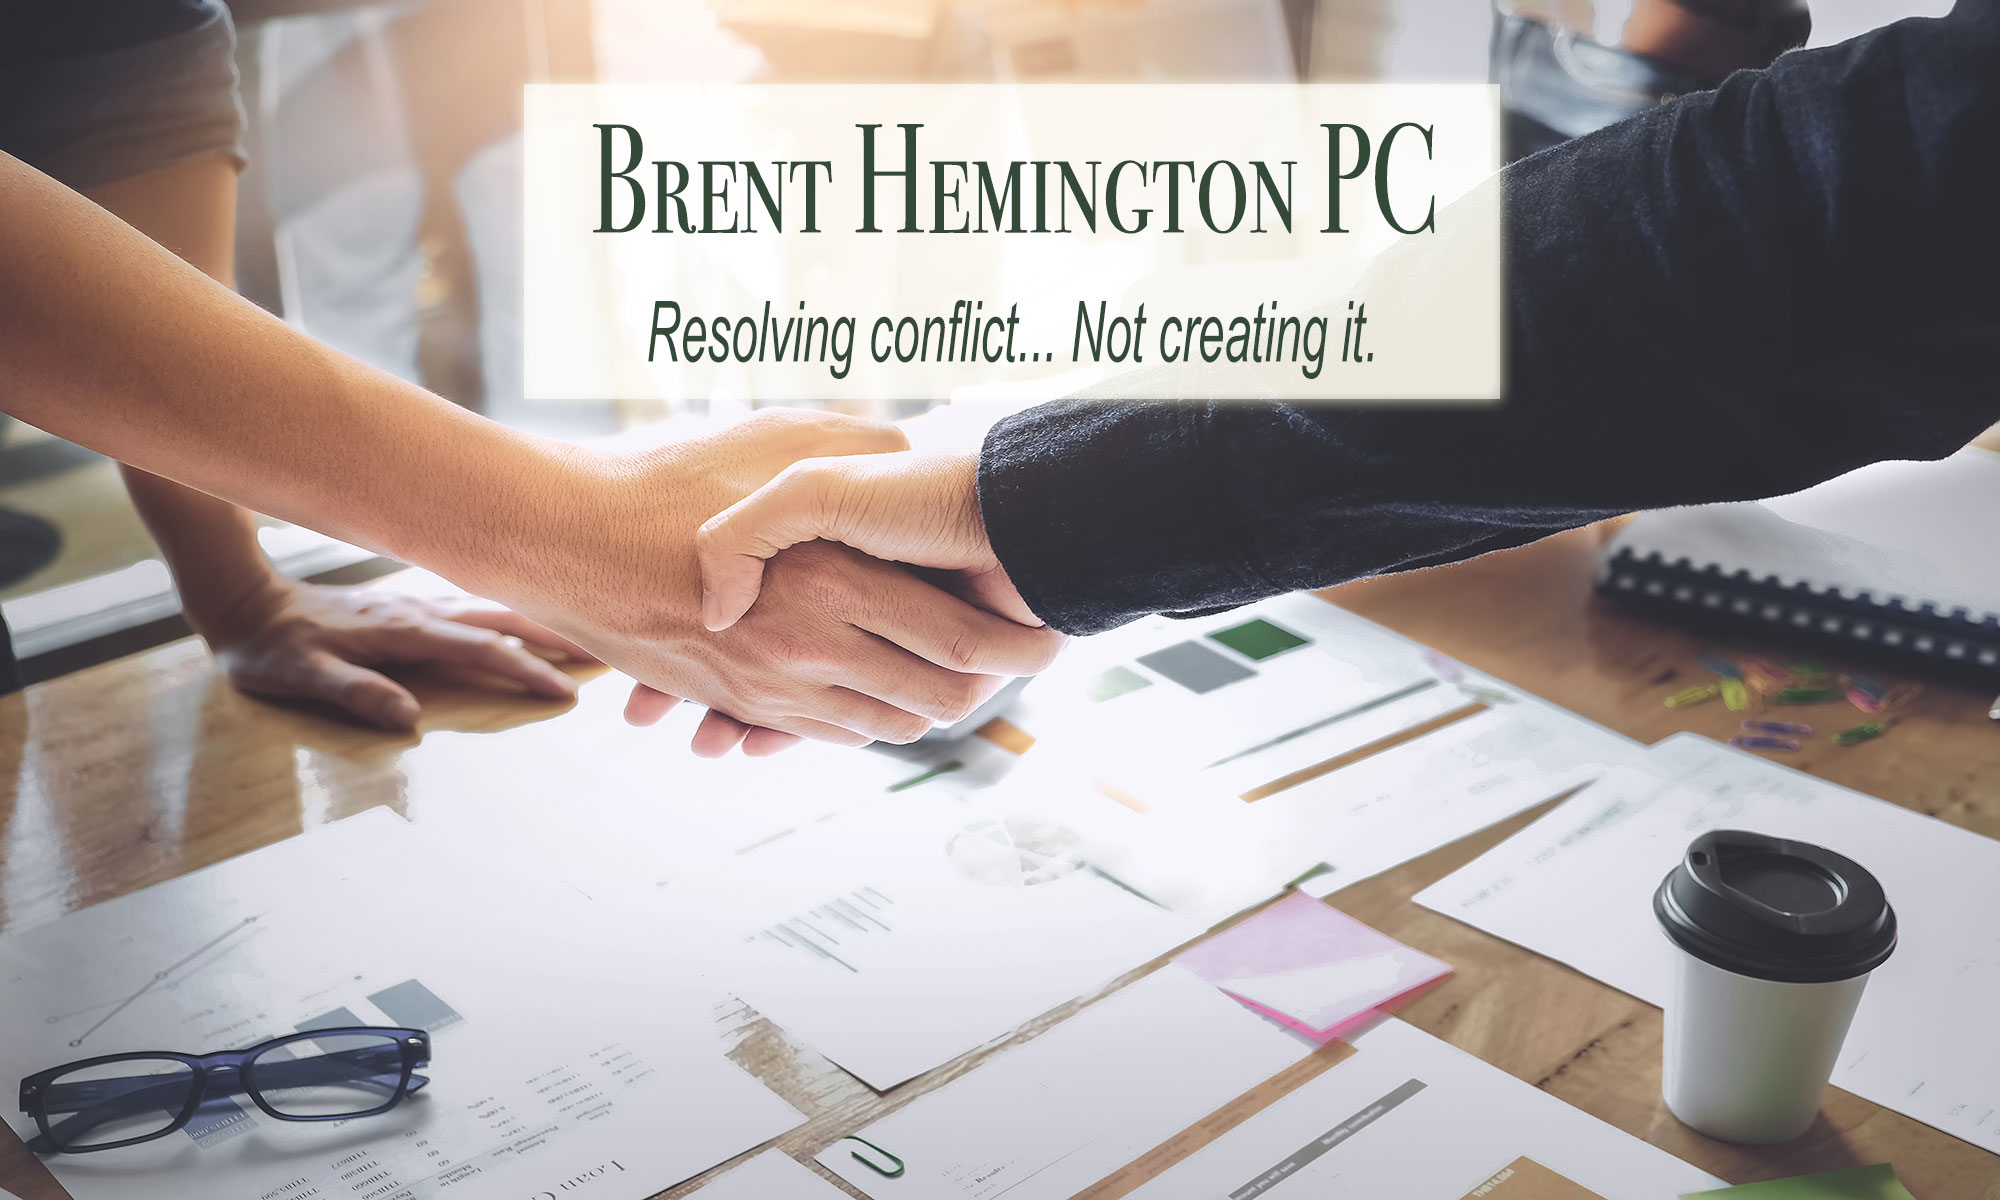 Brent Hemington PC